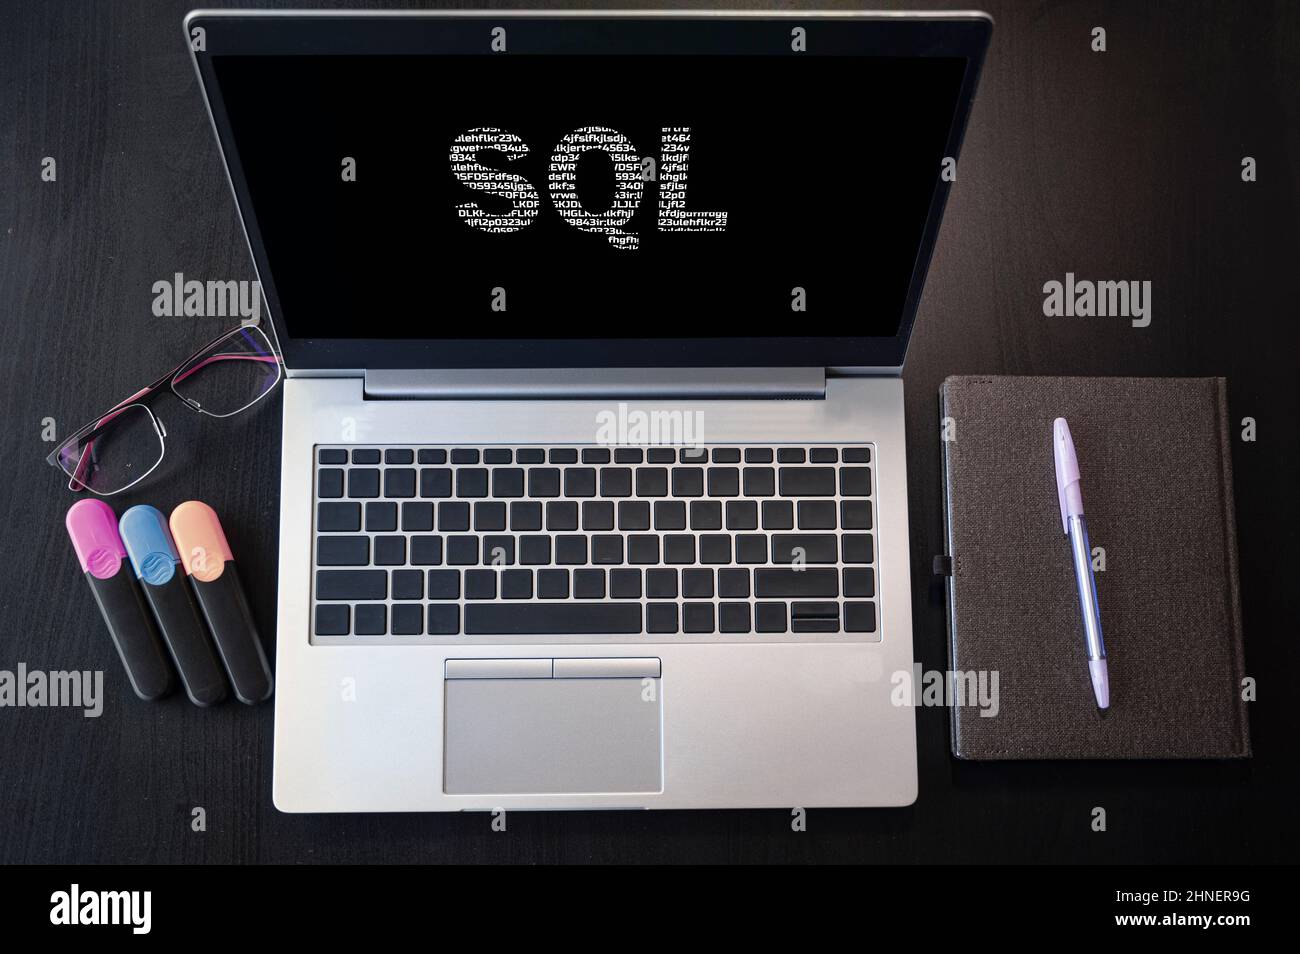 Vue de dessus de l'ordinateur portable avec texte SQL. Inscription SQL sur l'écran et le clavier de l'ordinateur portable. Apprenez le langage SQL, les cours sur ordinateur, la formation. Banque D'Images